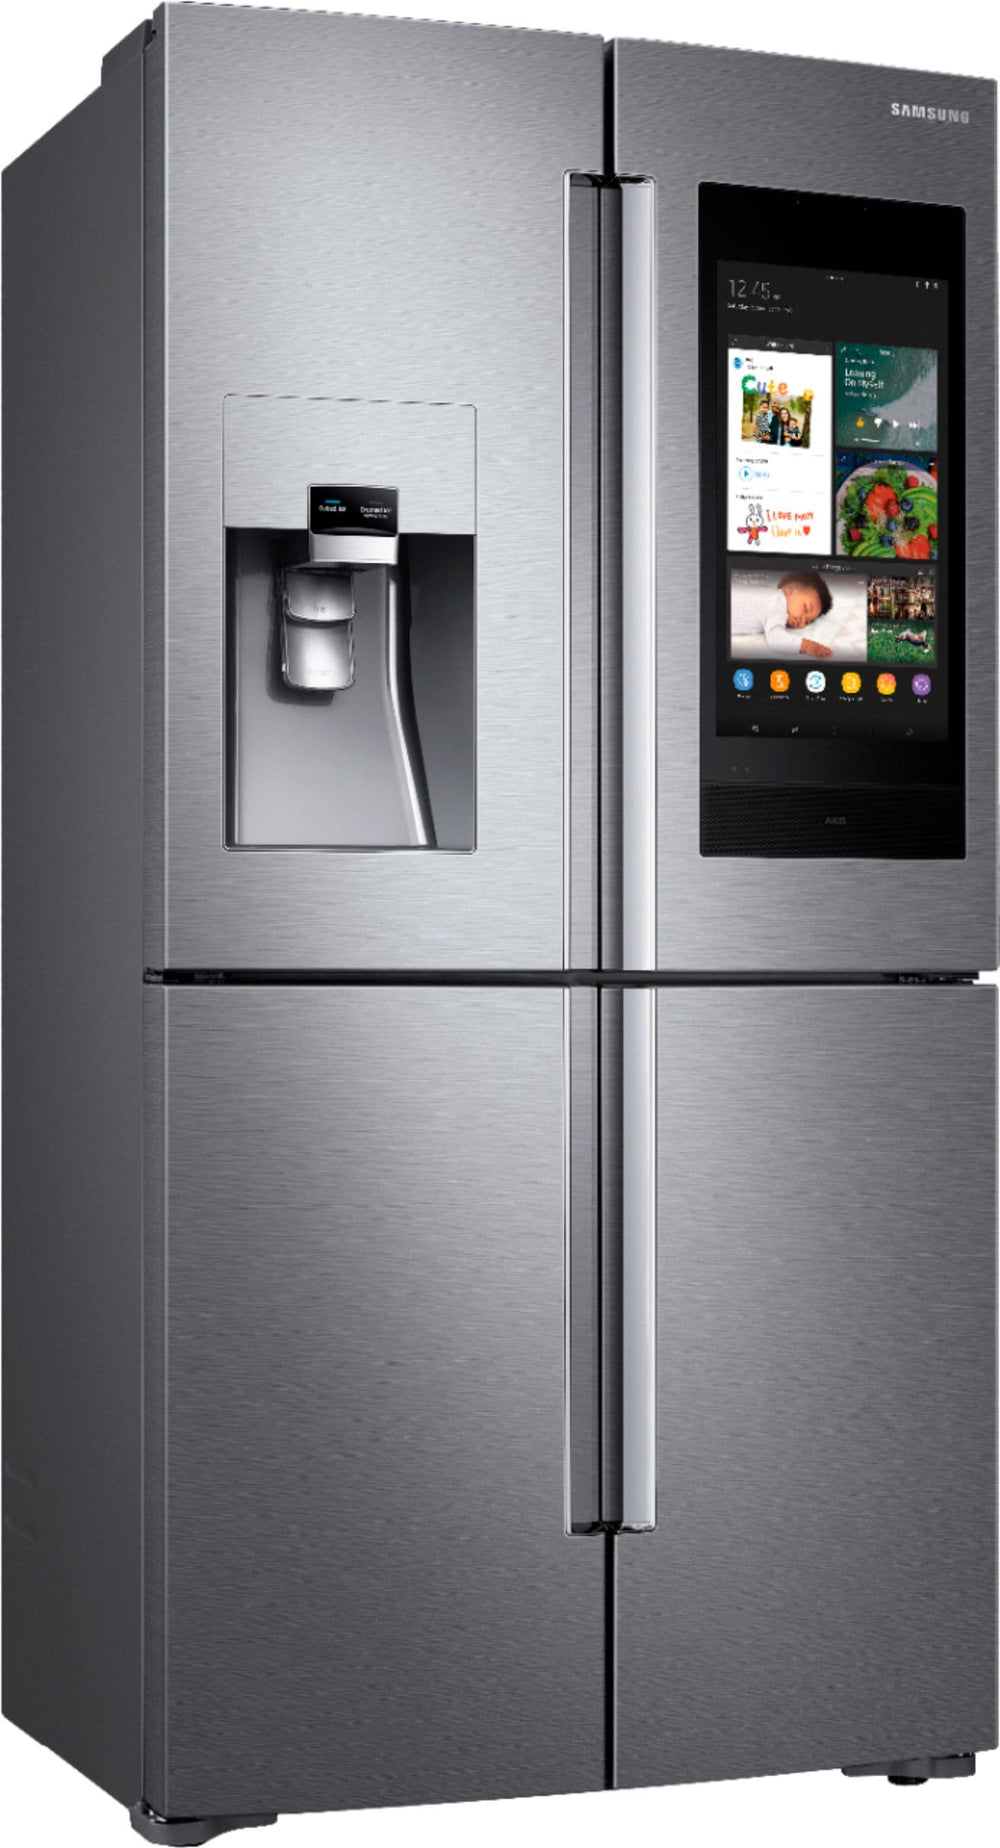 Samsung - Family Hub 22 Cu. Ft. 4-Door Flex French Door Counter-Depth Fingerprint Resistant Refrigerator - Stainless steel_1